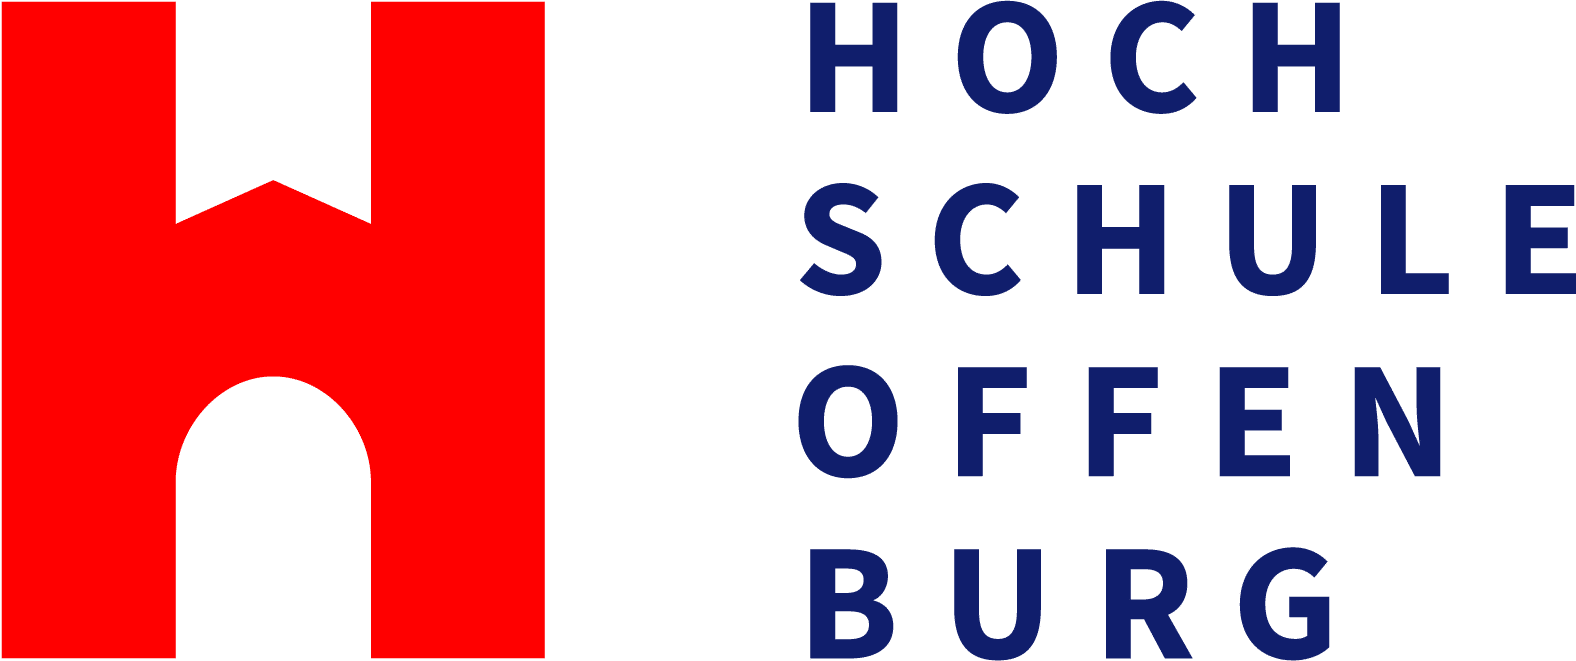 Logo Hochschule Offenburg